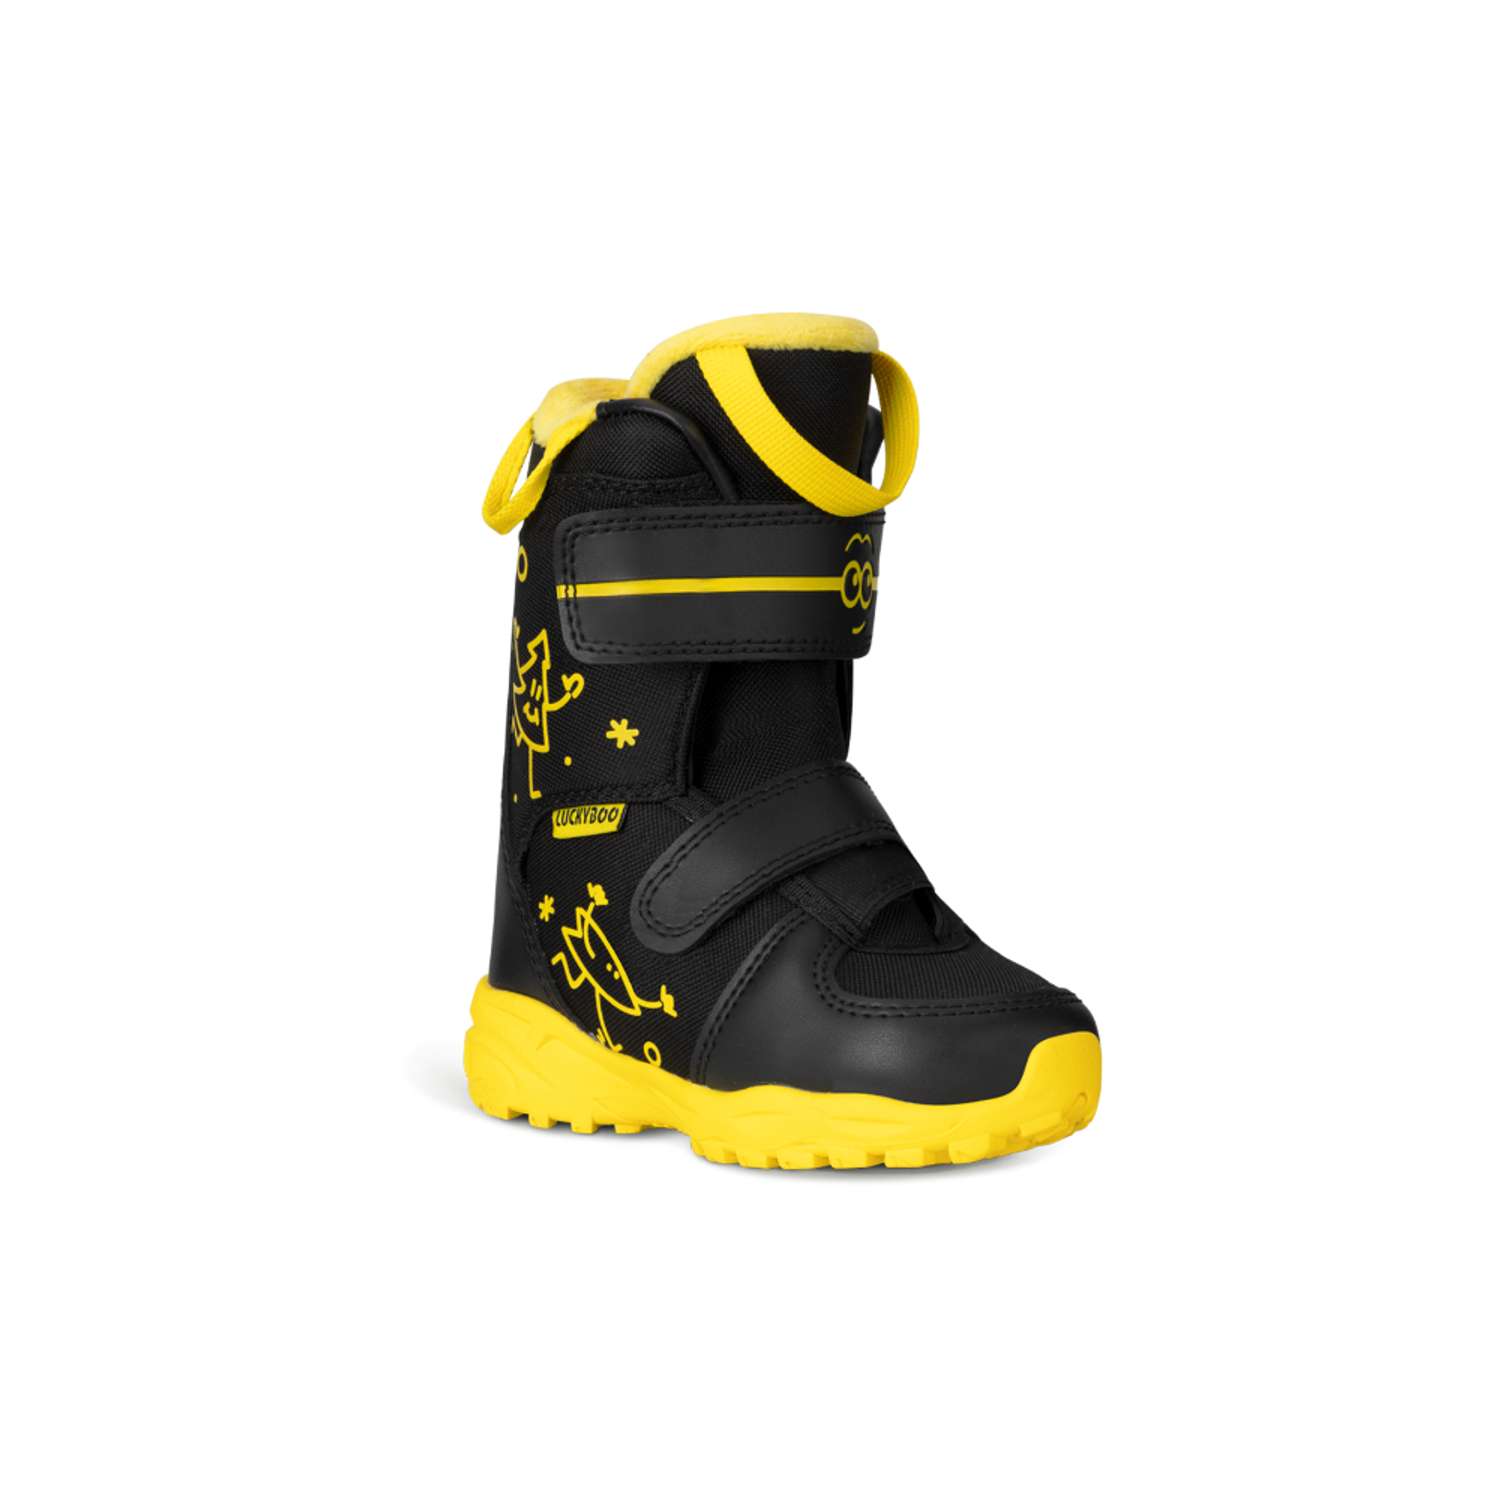 Ботинки для сноуборда Velcro Luckyboo 19cm - фото 1